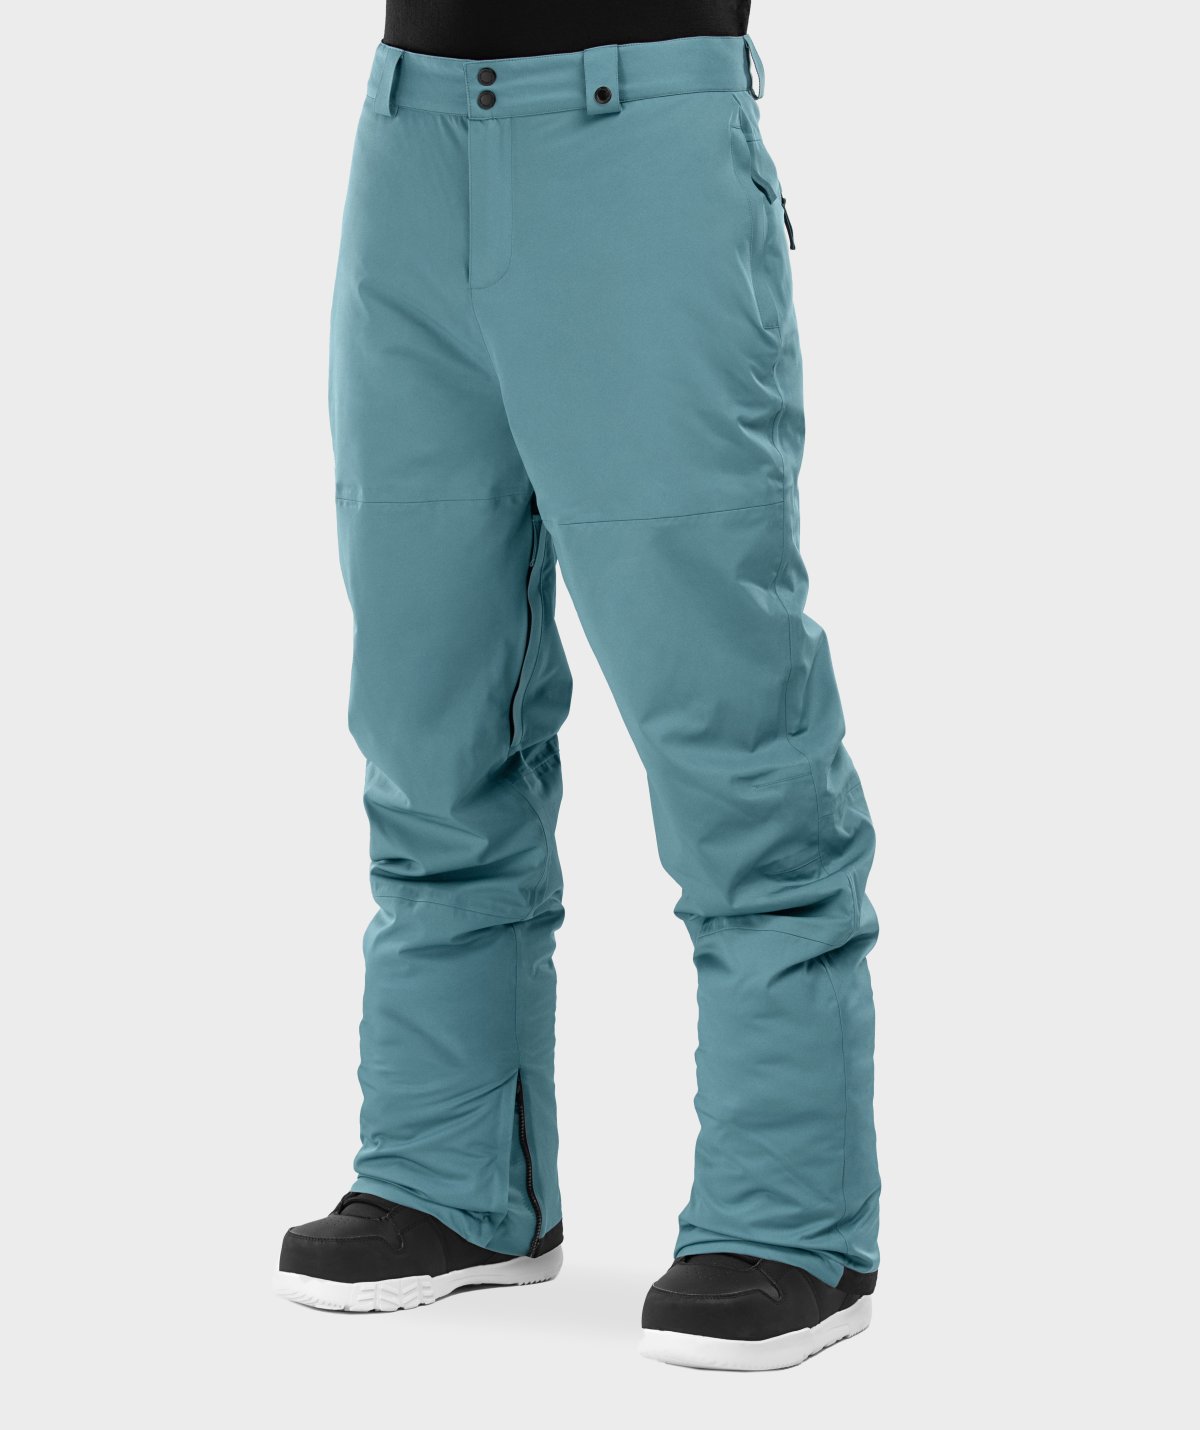 Pantalones esquí y nieve SIROKO Slope-W Azul Acero Mujer